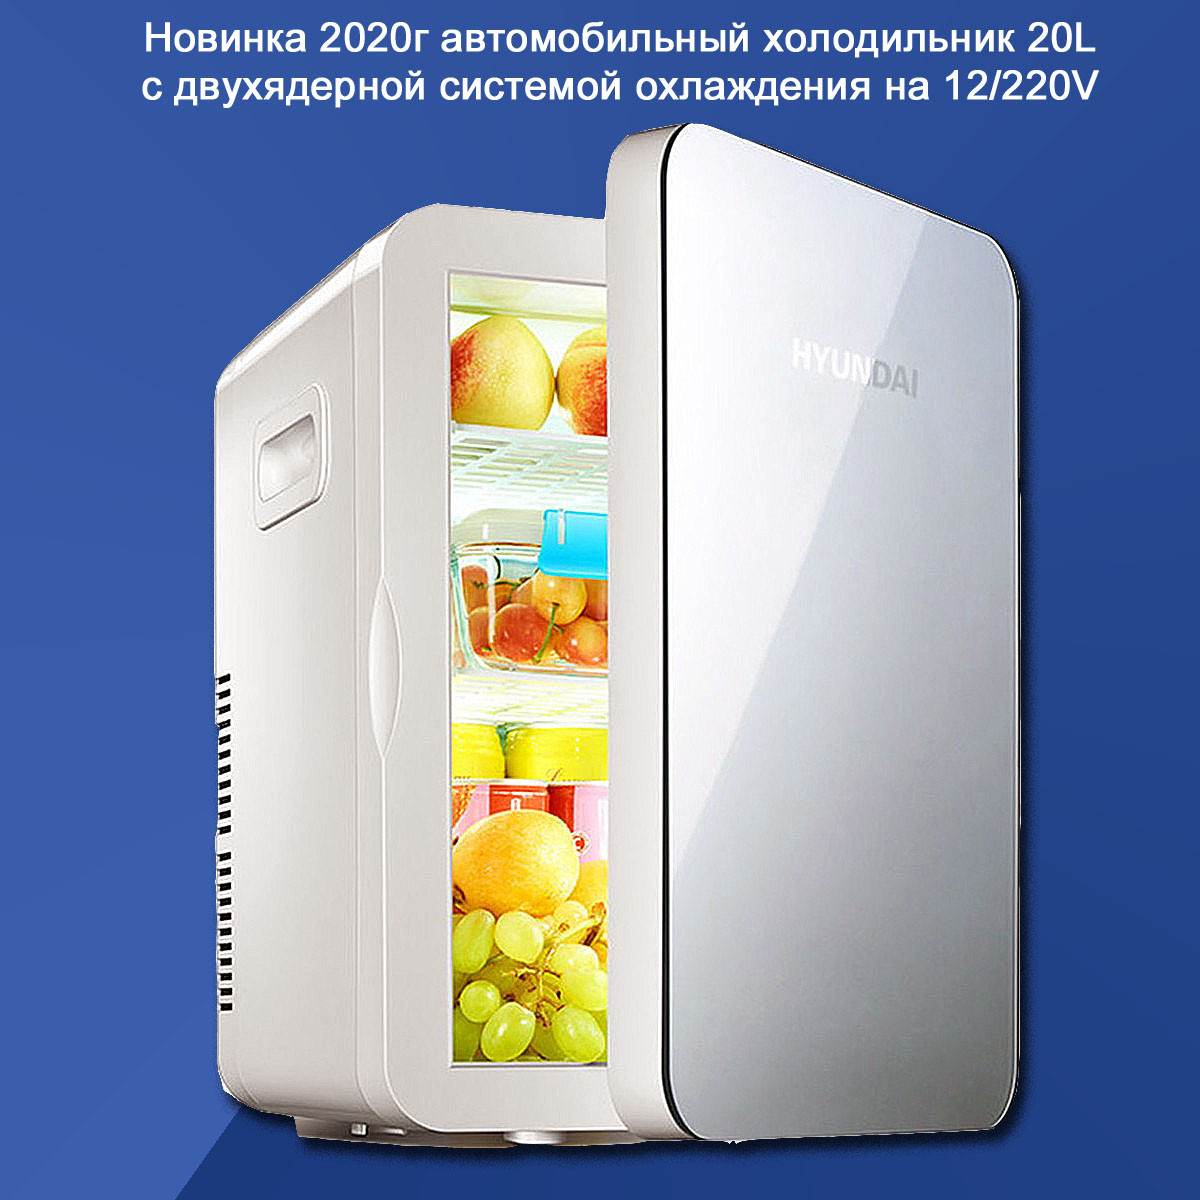 Мини холодильник автомобильный HYUNDAI с двойной системой охлаждения 12V/220V